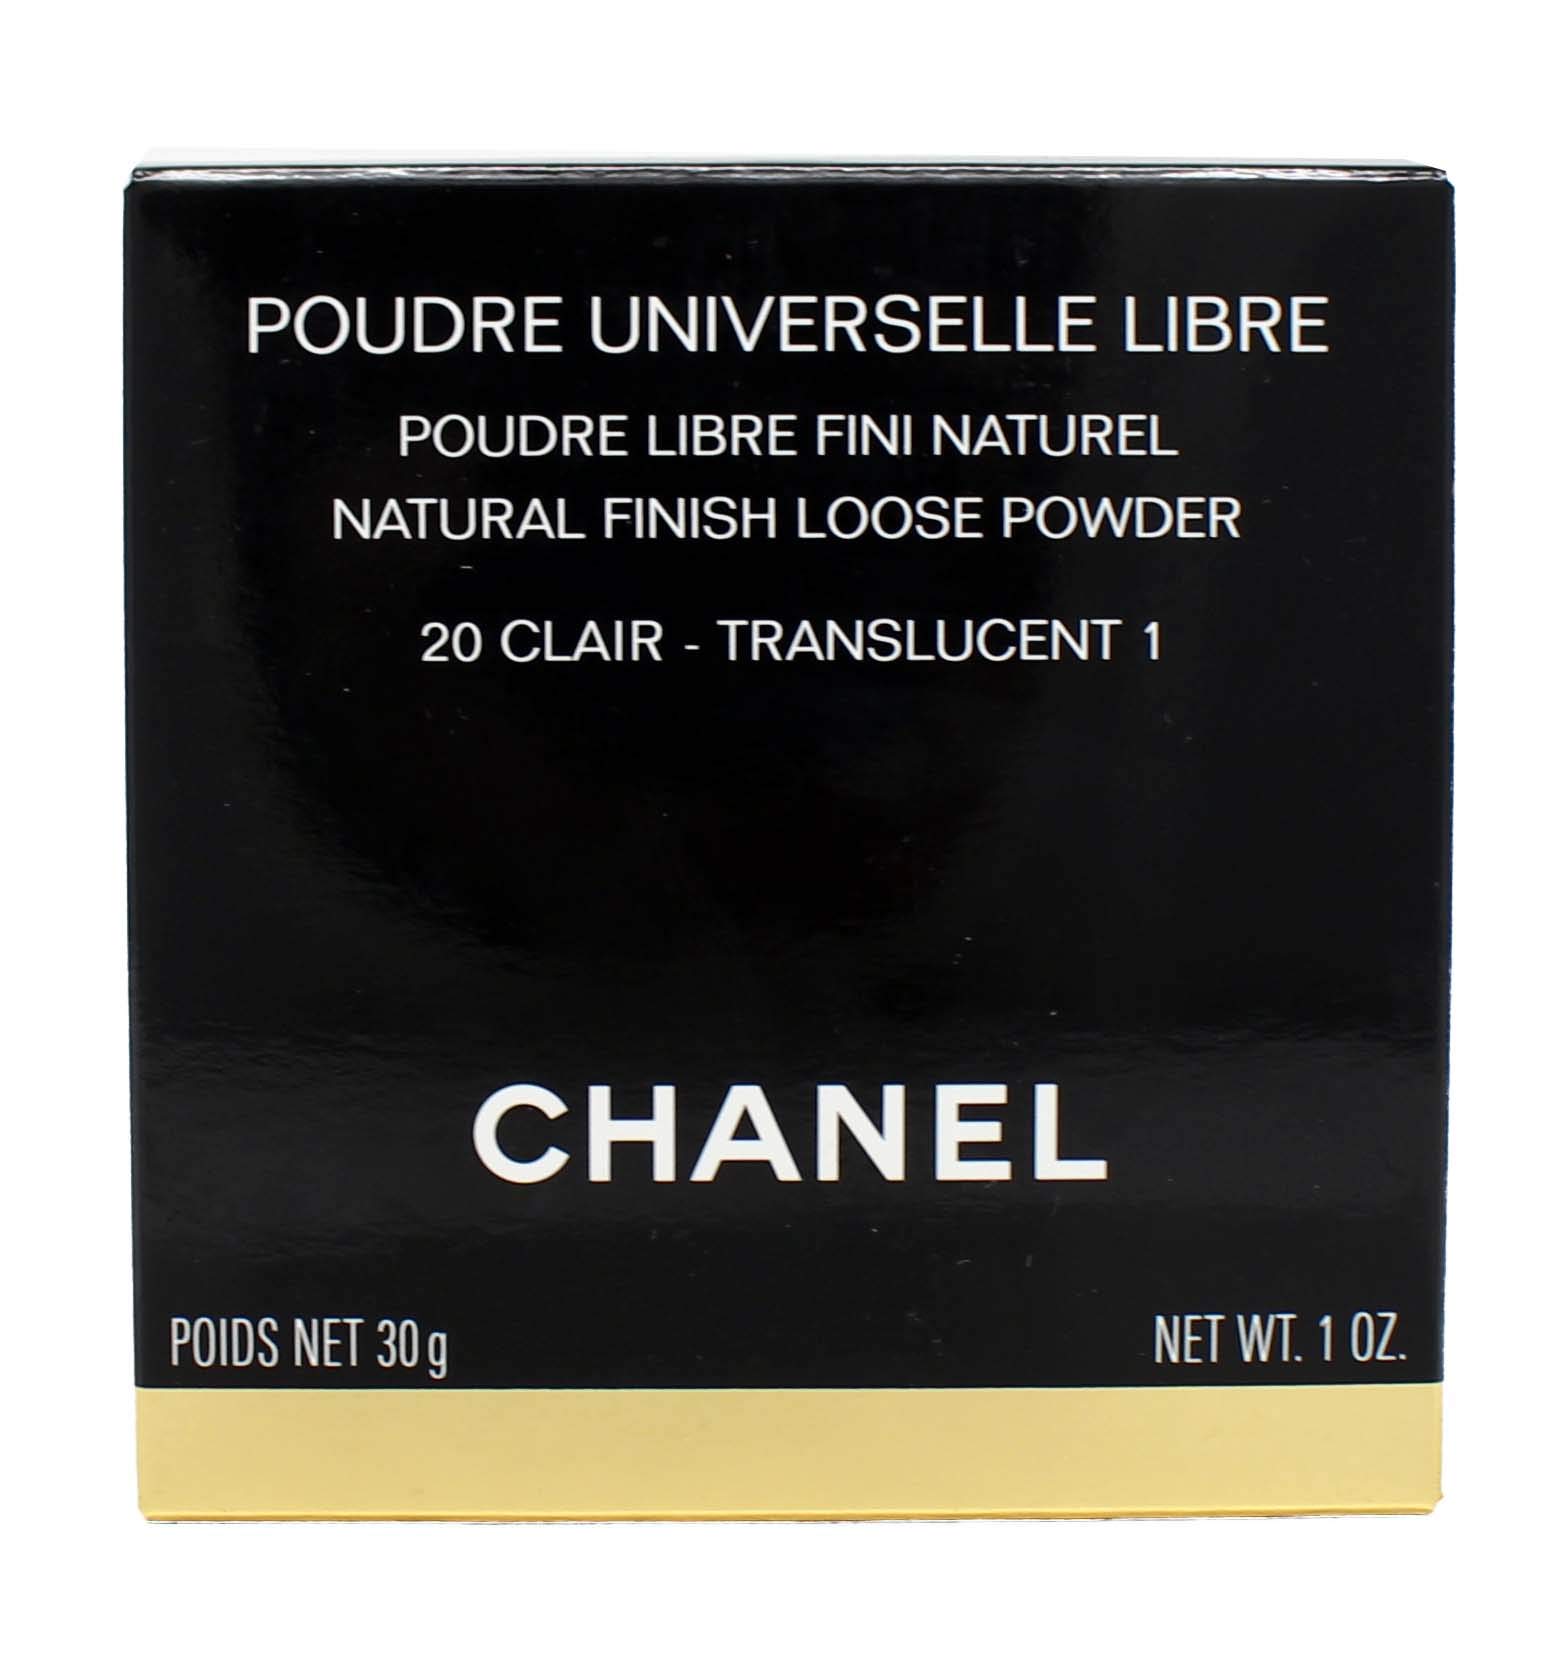 Chanel  Phấn Phủ Mịn Poudre Universelle Libre 30g1oz  Nền  Phấn  Free  Worldwide Shipping  Strawberrynet VN